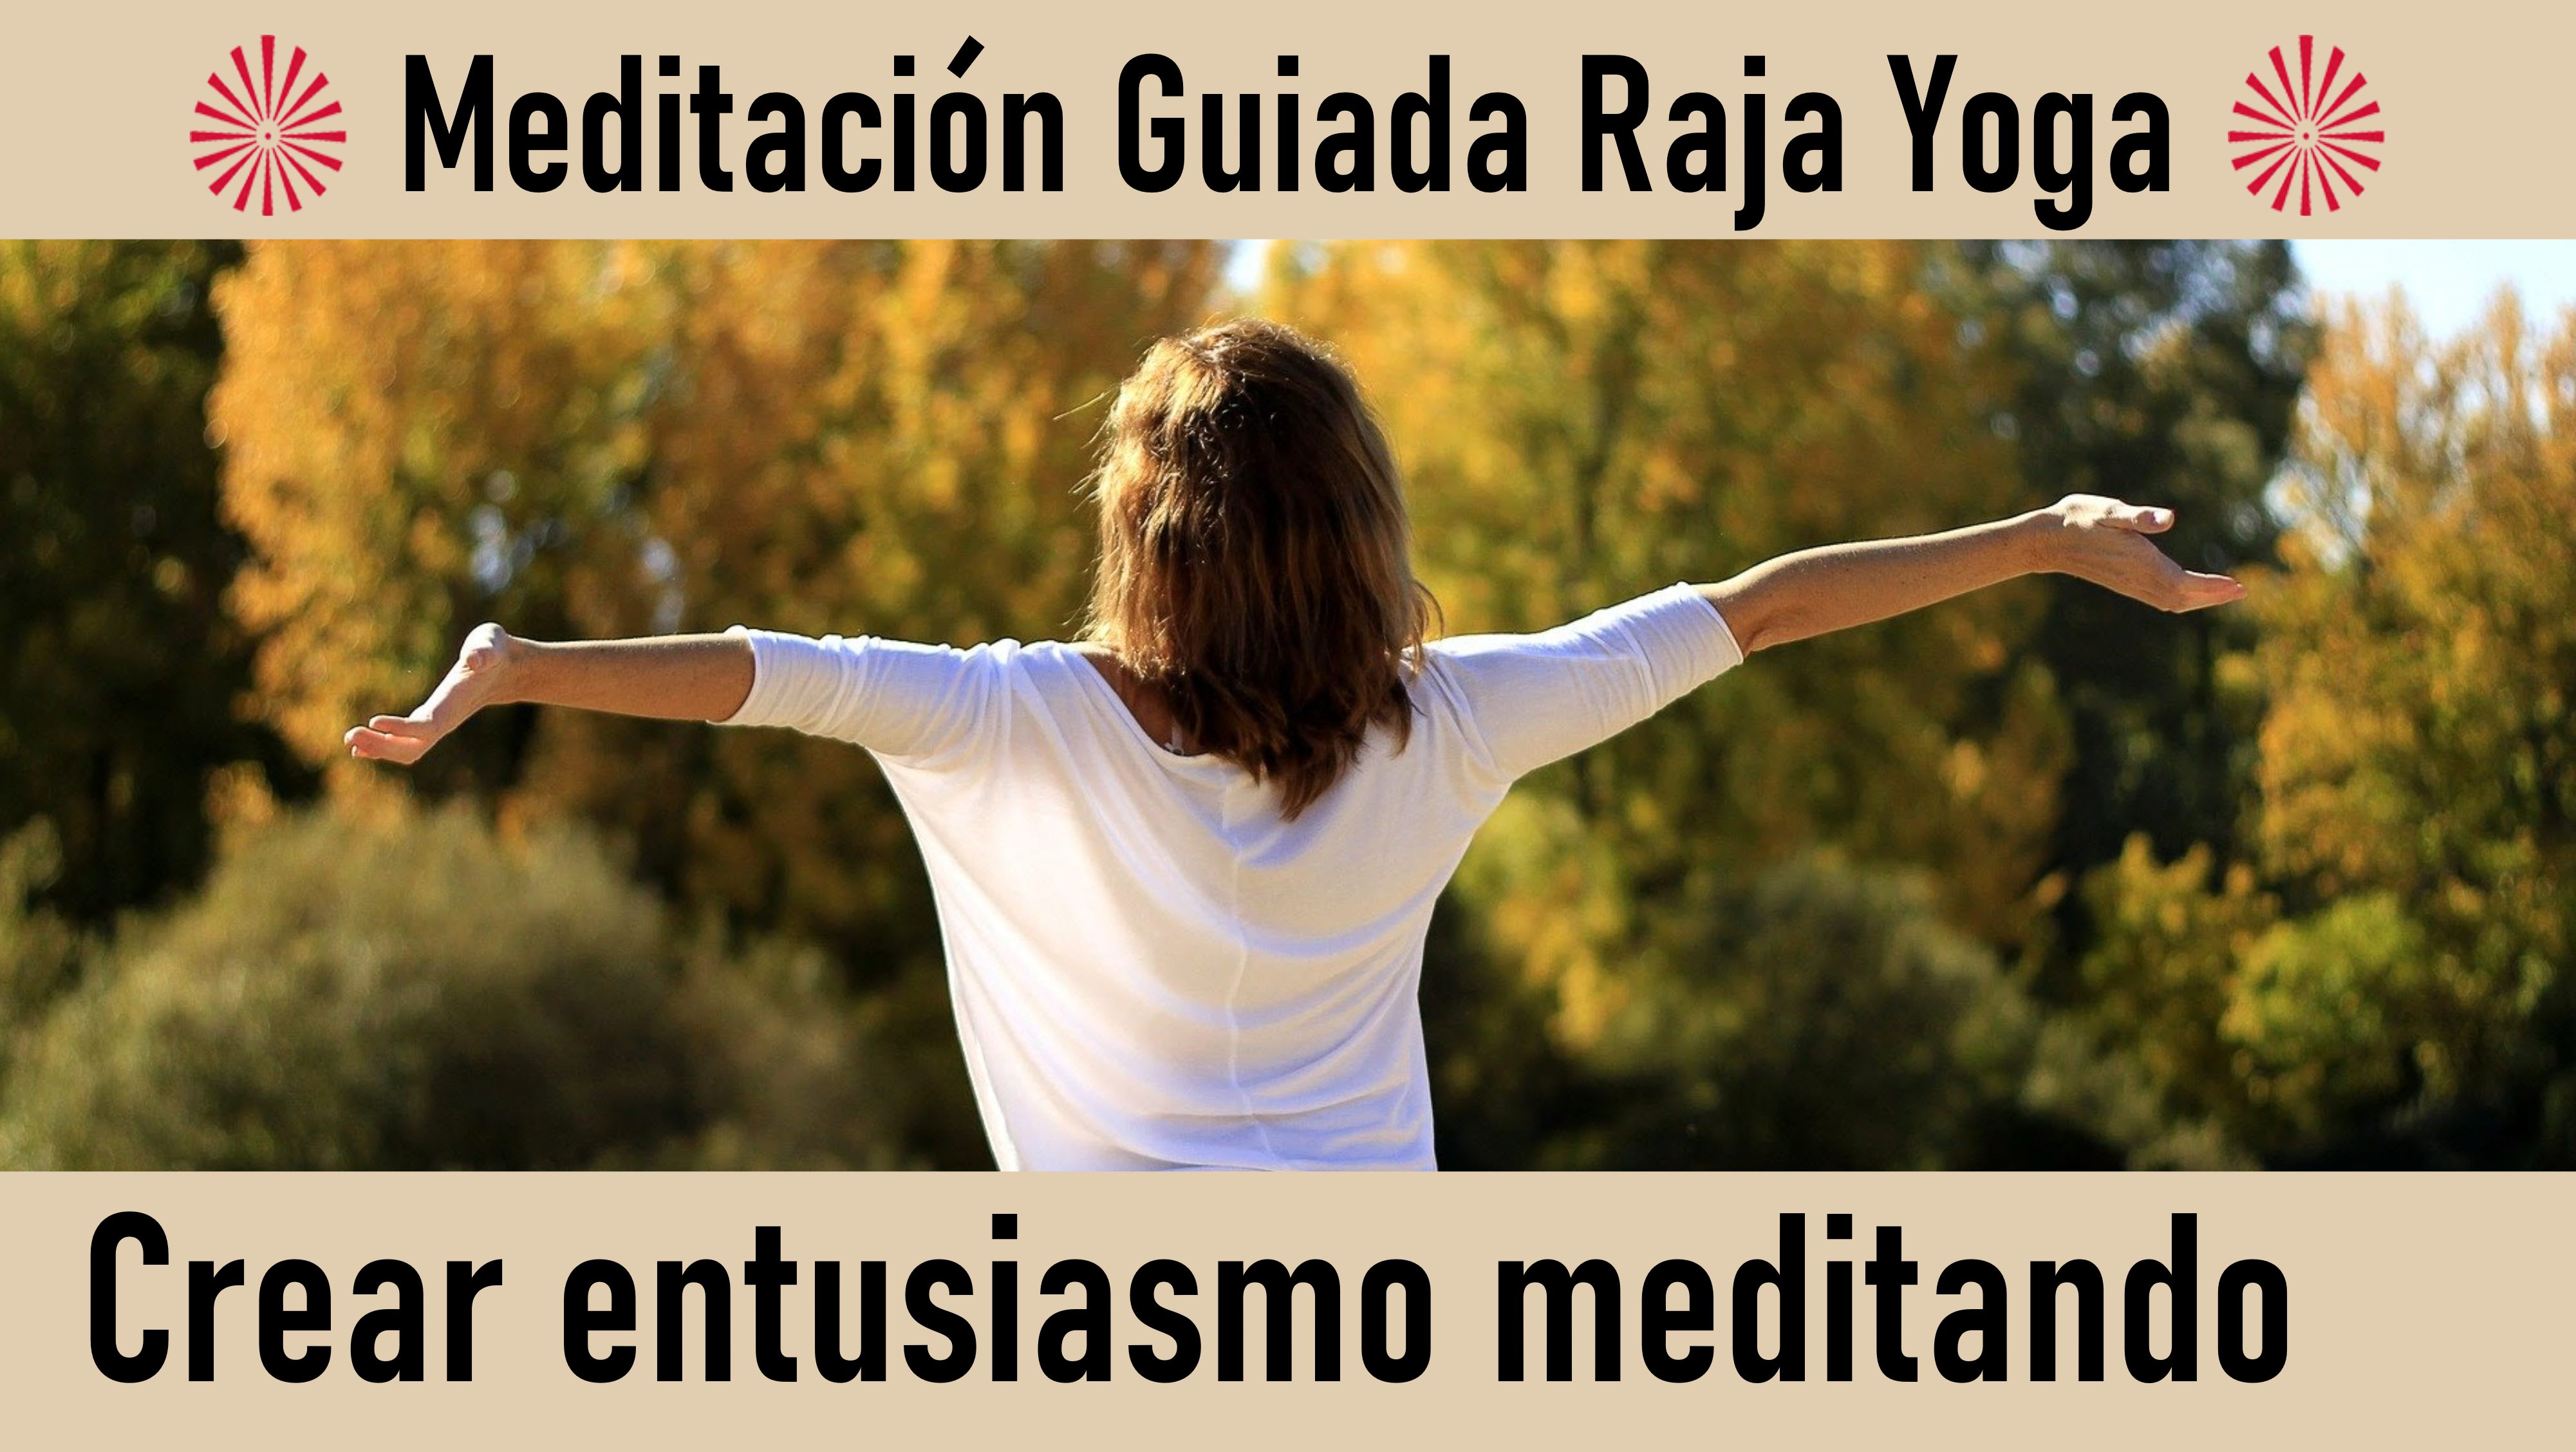 Meditación Raja Yoga: Crear entusiasmo meditando (24 Junio 2020) On-line desde Sevilla